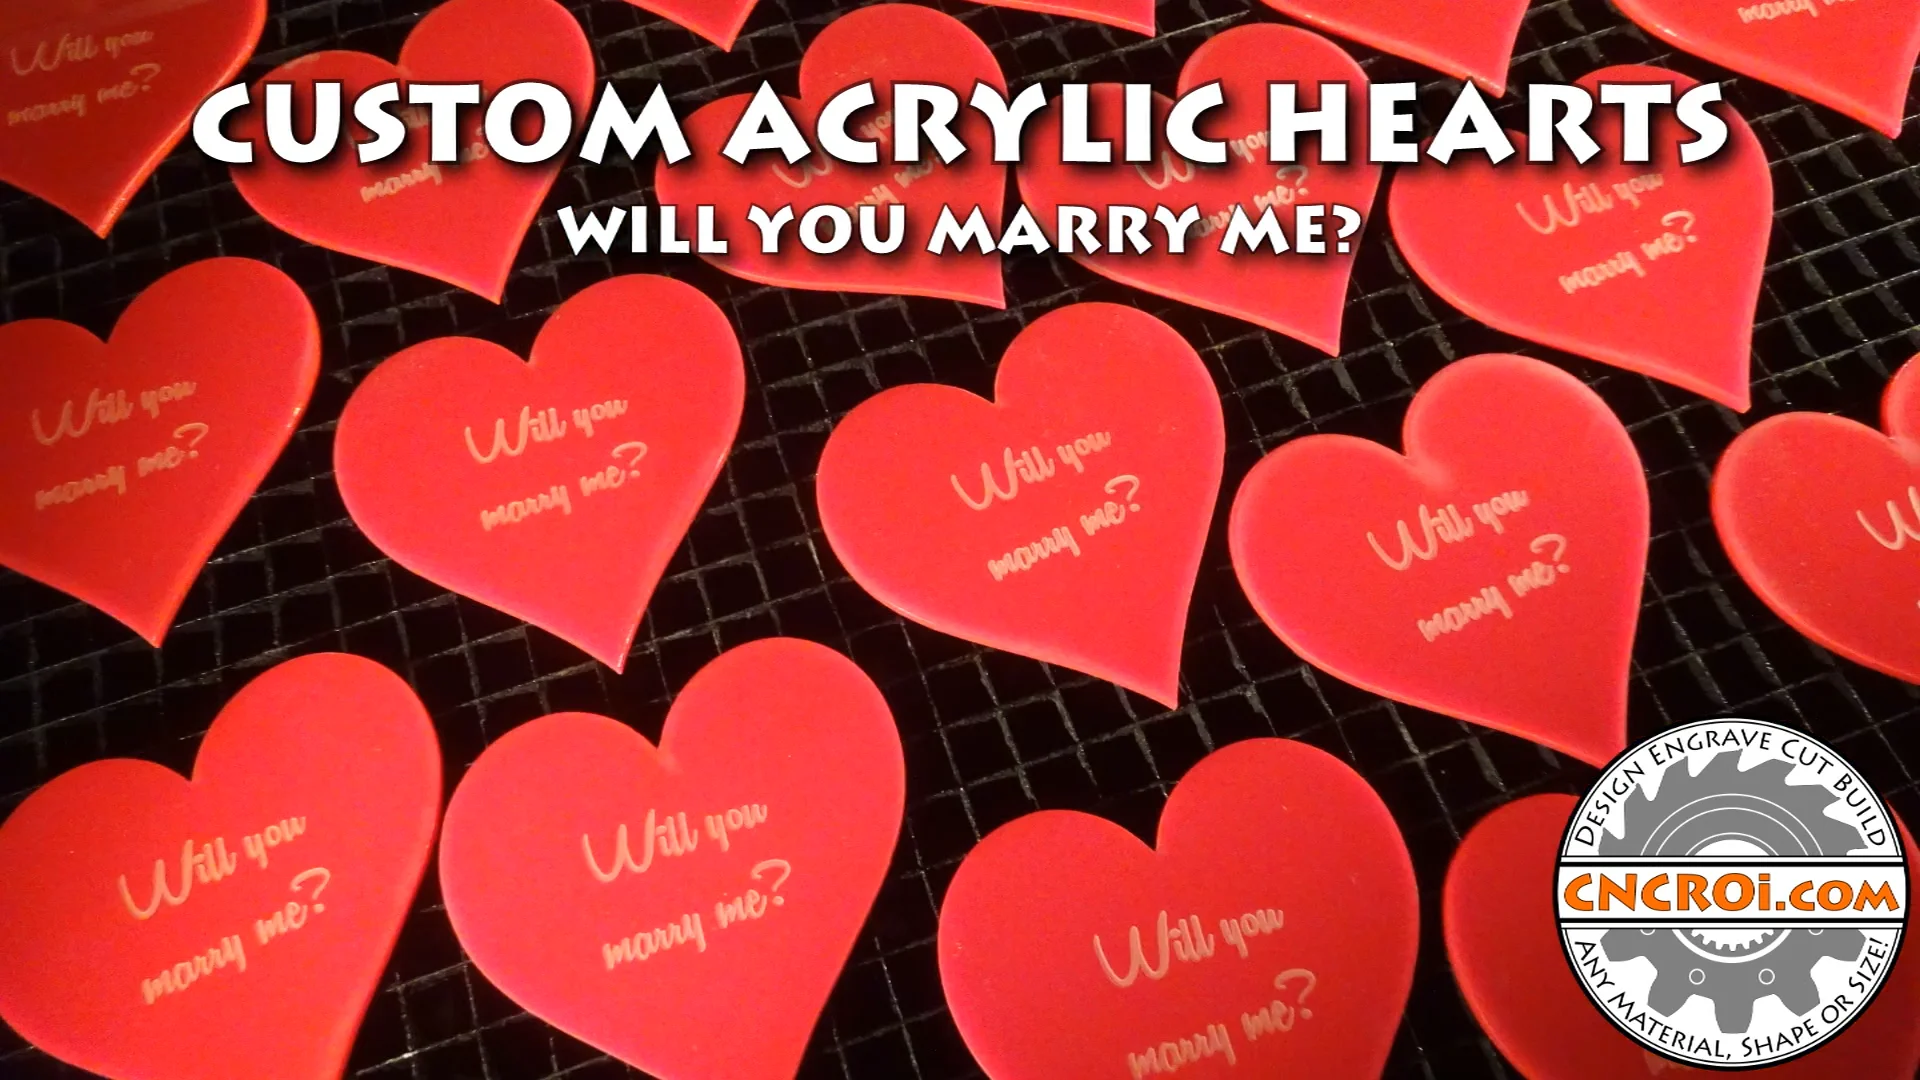 Custom Acrylic Hearts: Will You Marry Me? on Vimeo